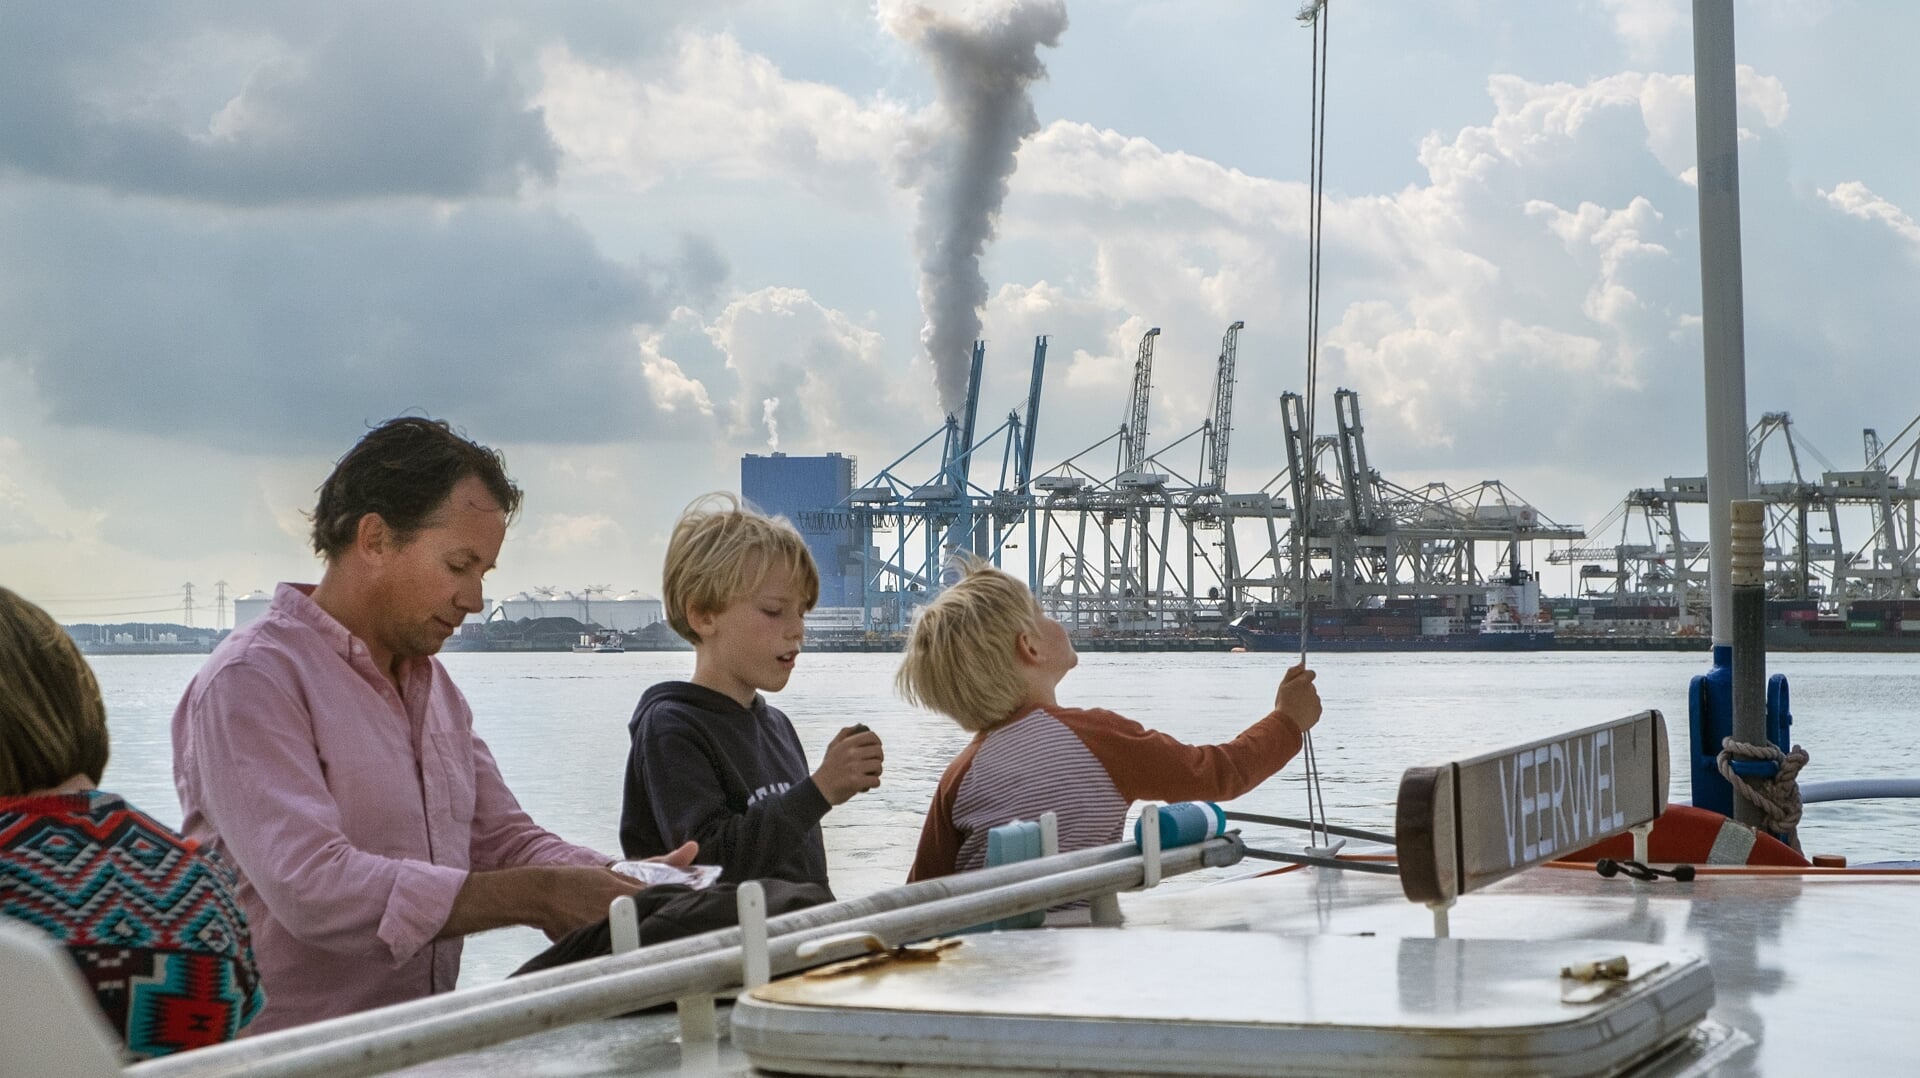 Toeristen varen mee op de pont langs een kolencentrale op de Maasvlakte. Een nieuw klimaatrapport dat maandag verschijnt, moet overheden aanzetten tot actie om de uitstoot van broeikasgassen snel terug te dringen.